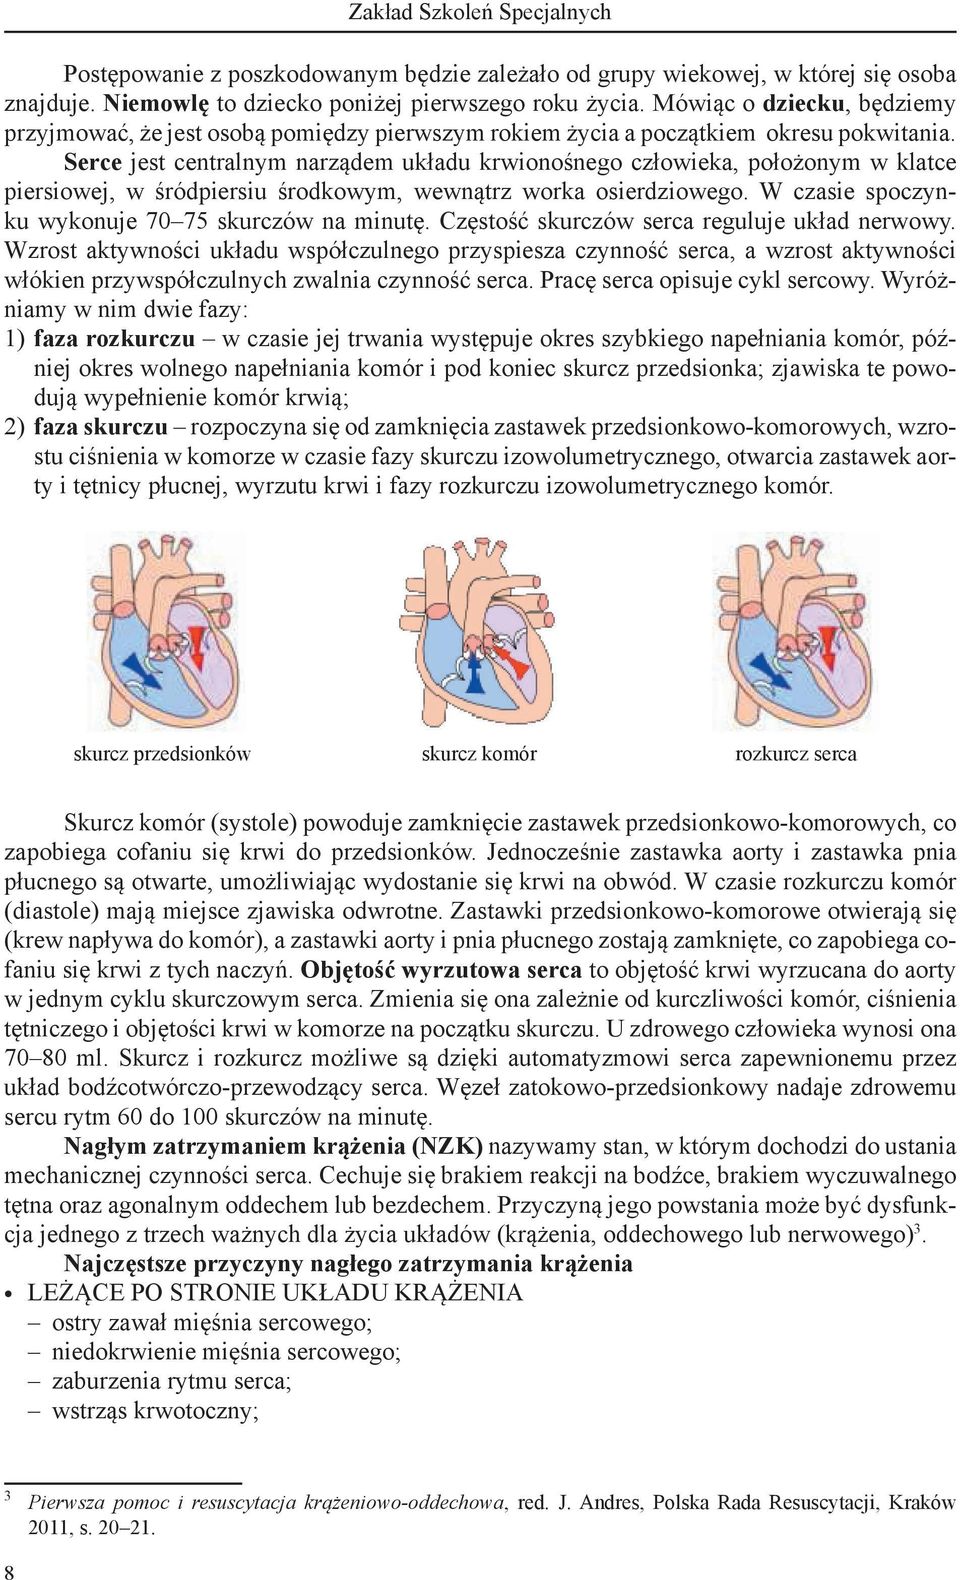 Serce jest centralnym narządem układu krwionośnego człowieka, położonym w klatce piersiowej, w śródpiersiu środkowym, wewnątrz worka osierdziowego.